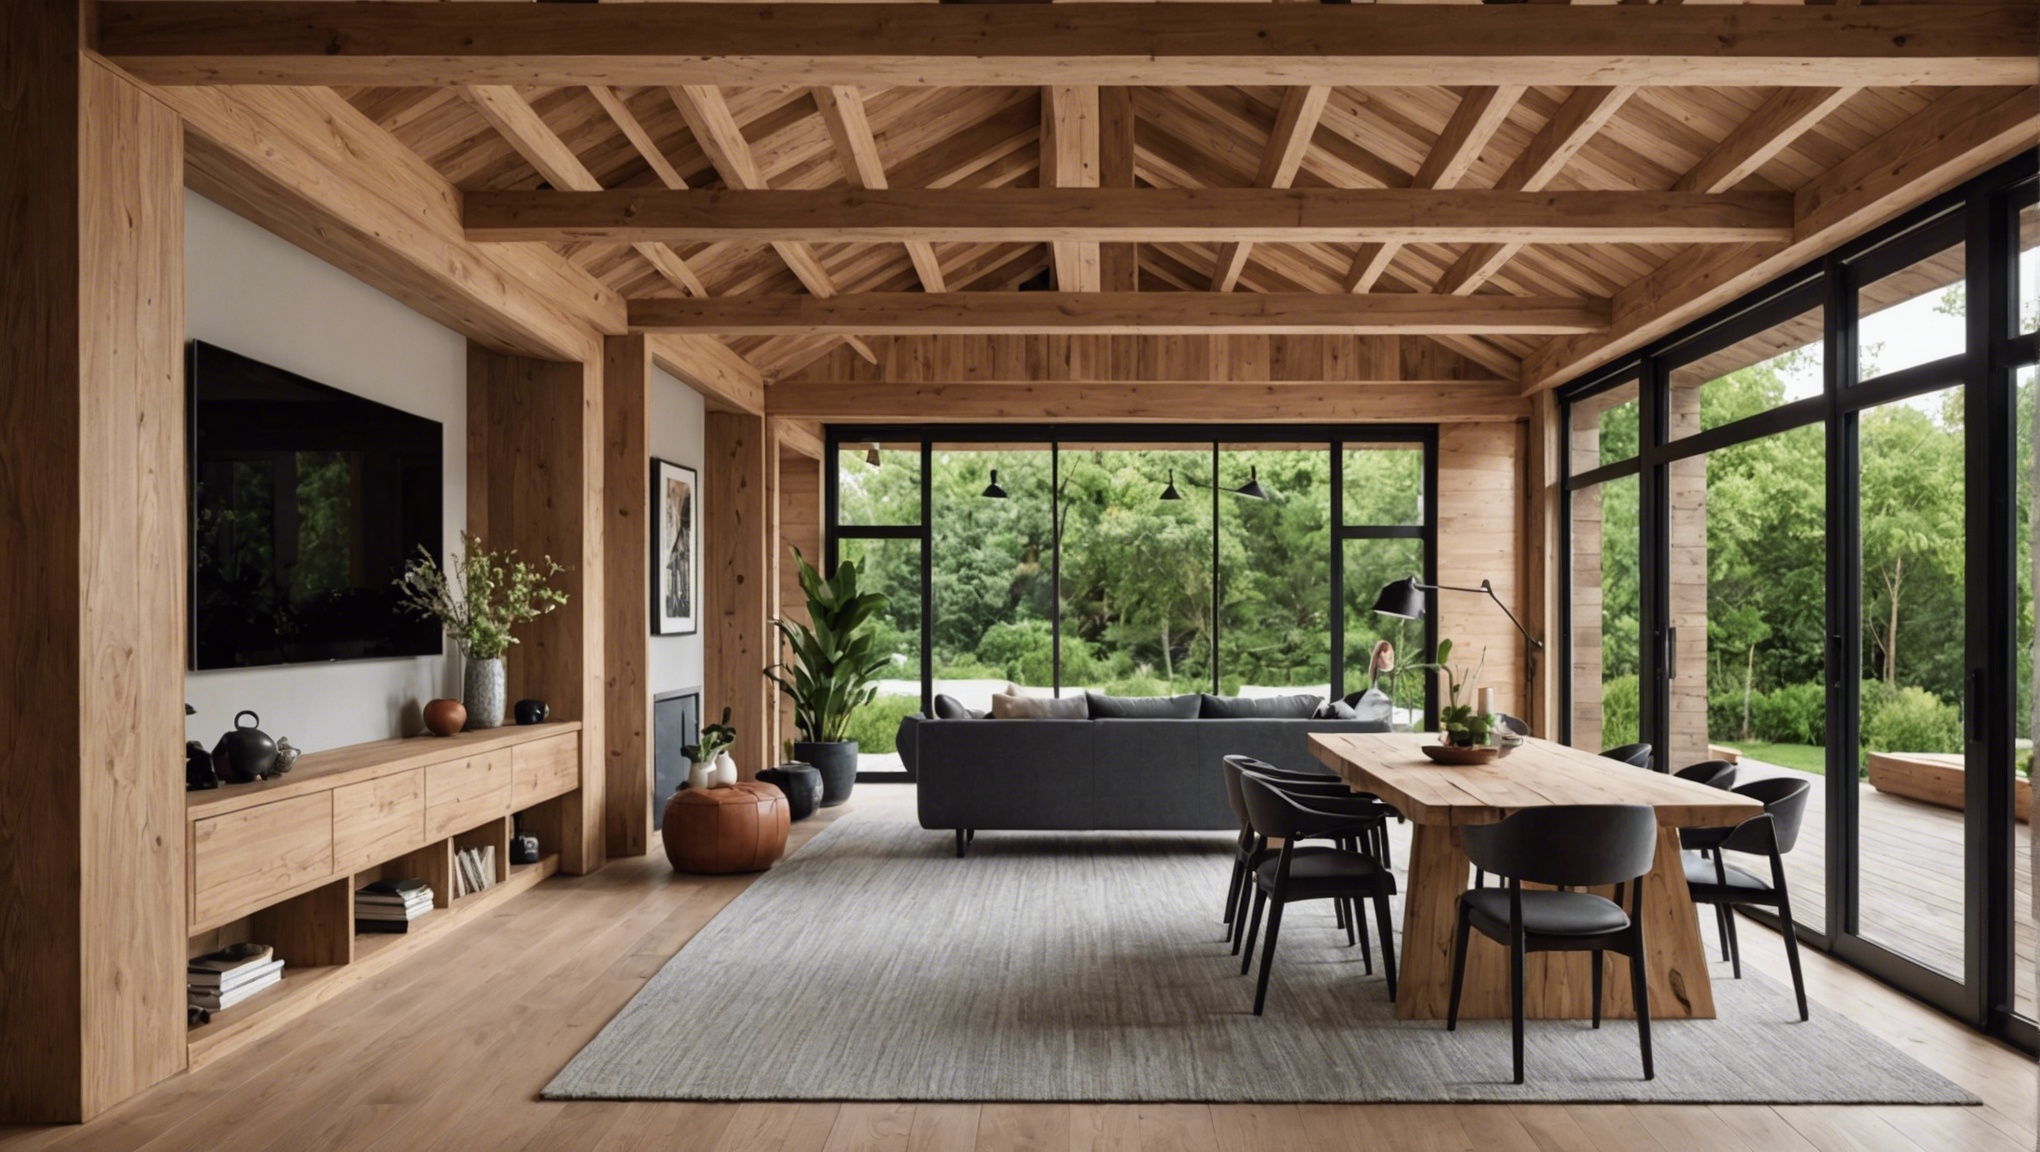 découvrez les dernières tendances d'utilisation des claustras en bois pour sublimer votre espace intérieur ou extérieur. inspirez-vous des meilleurs idées de décoration et de design.